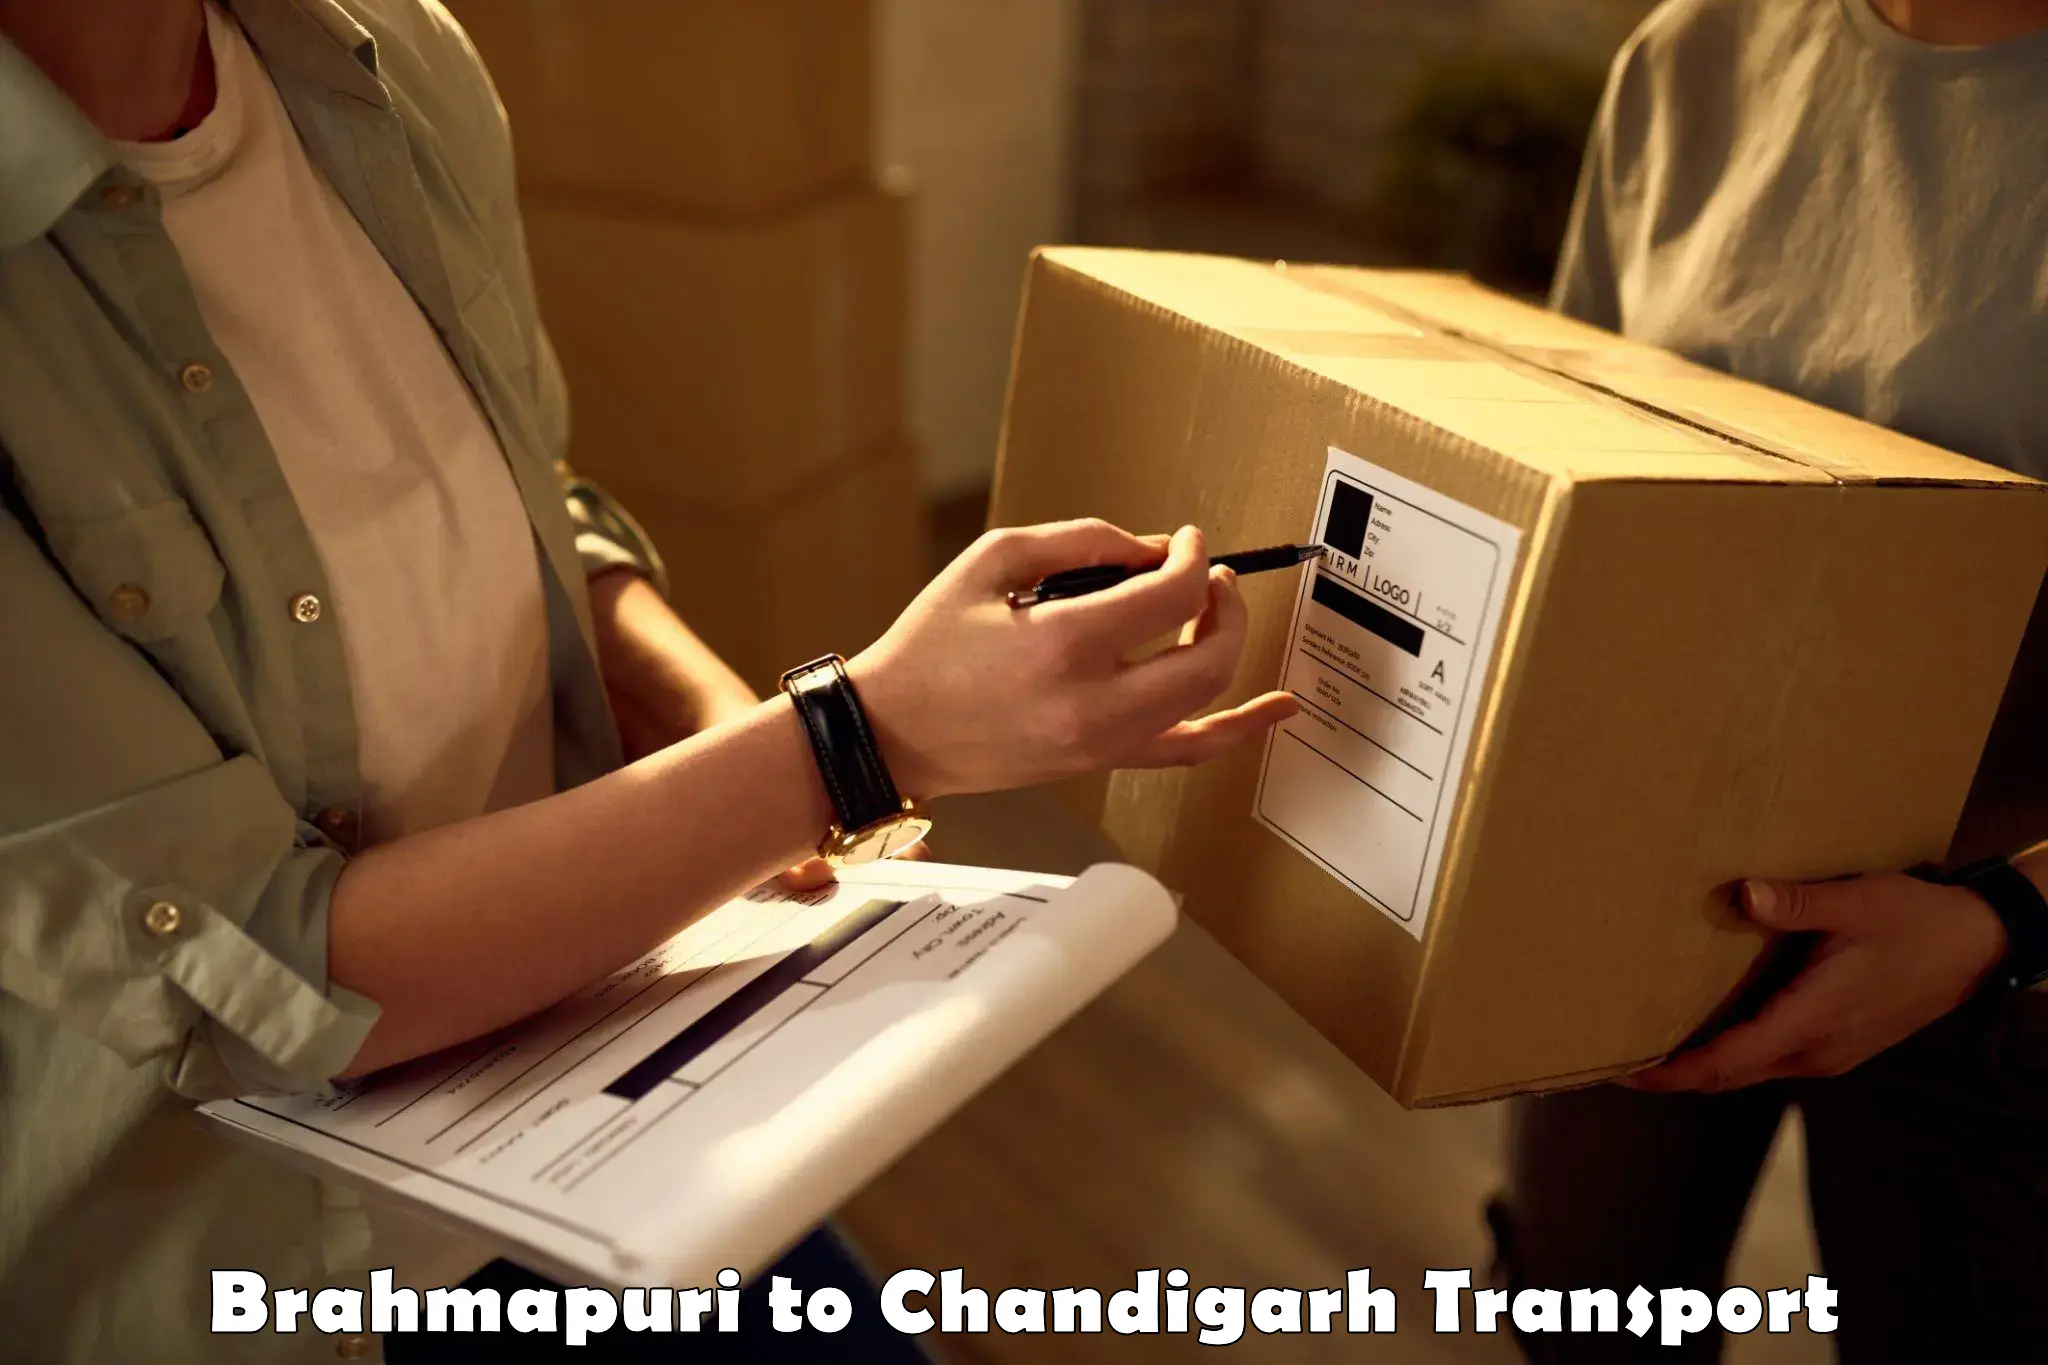 Truck transport companies in India Brahmapuri to Chandigarh